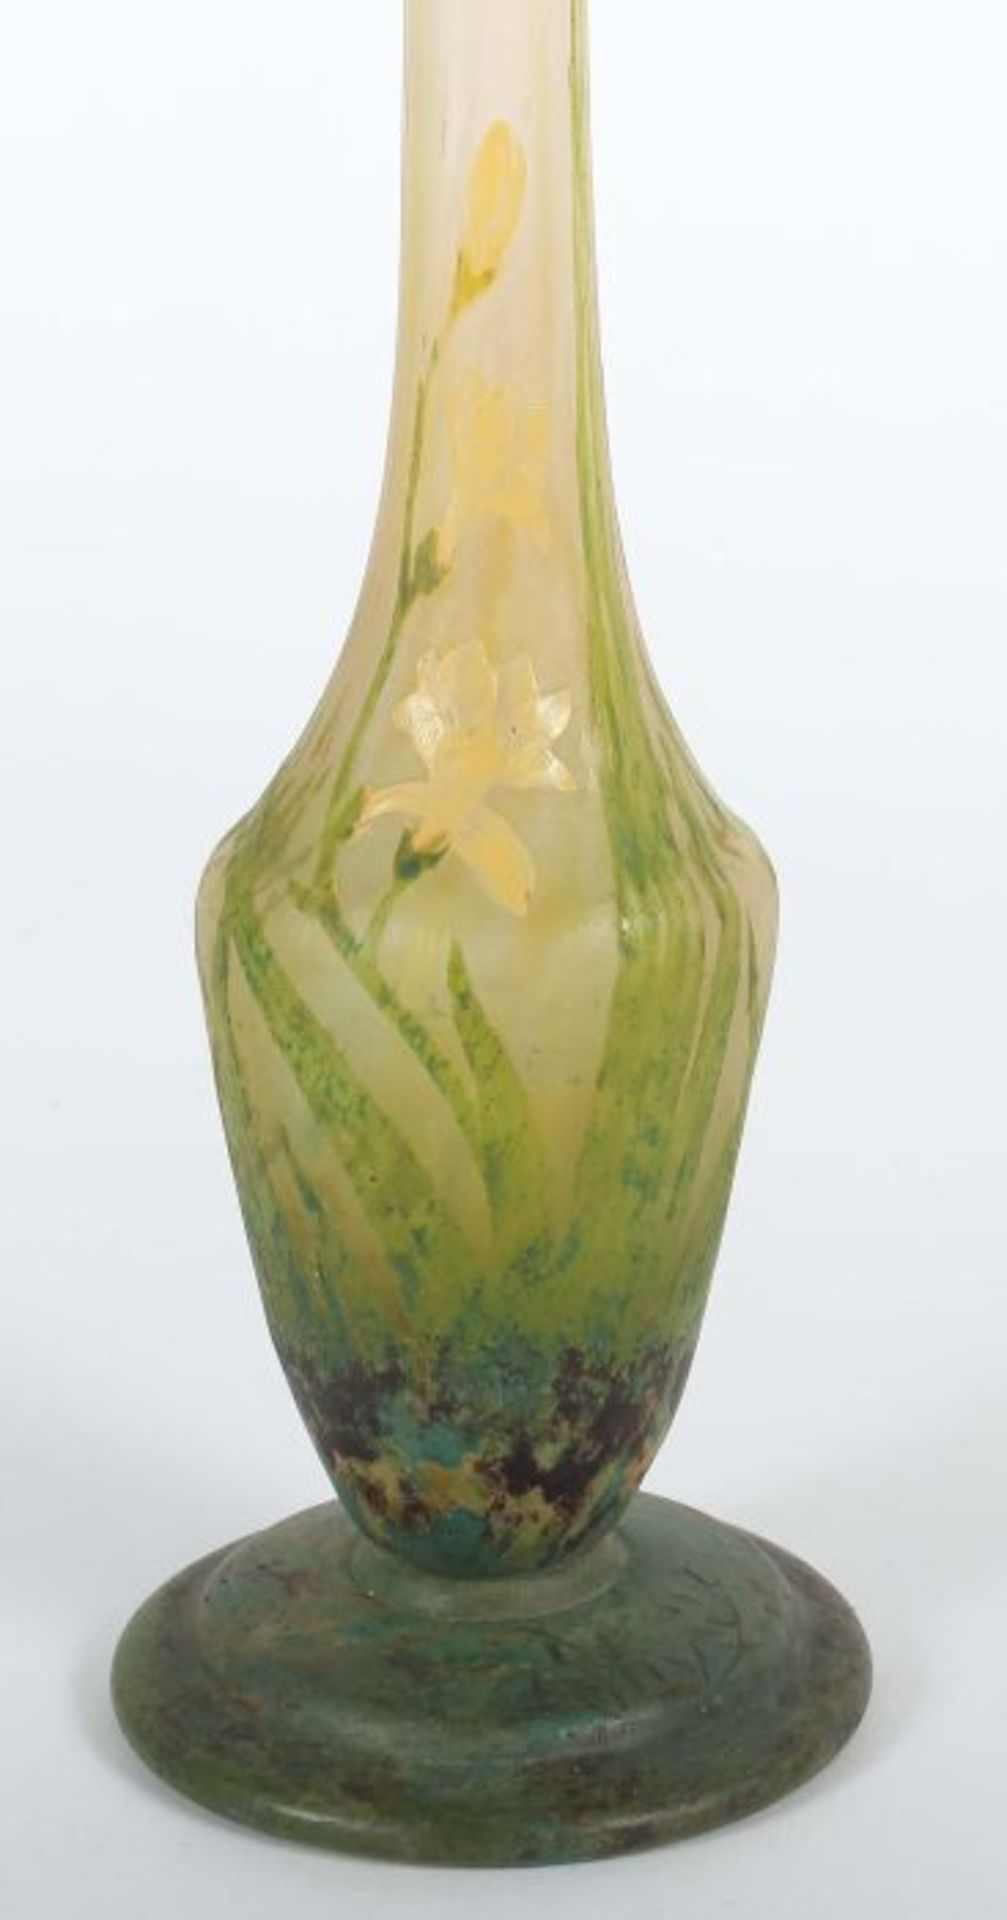 Vase "Freesias"Daum Frères & Cie, Verreries de Nancy, um 1910, farbloses Glas, mundgeblasen, - Bild 2 aus 4